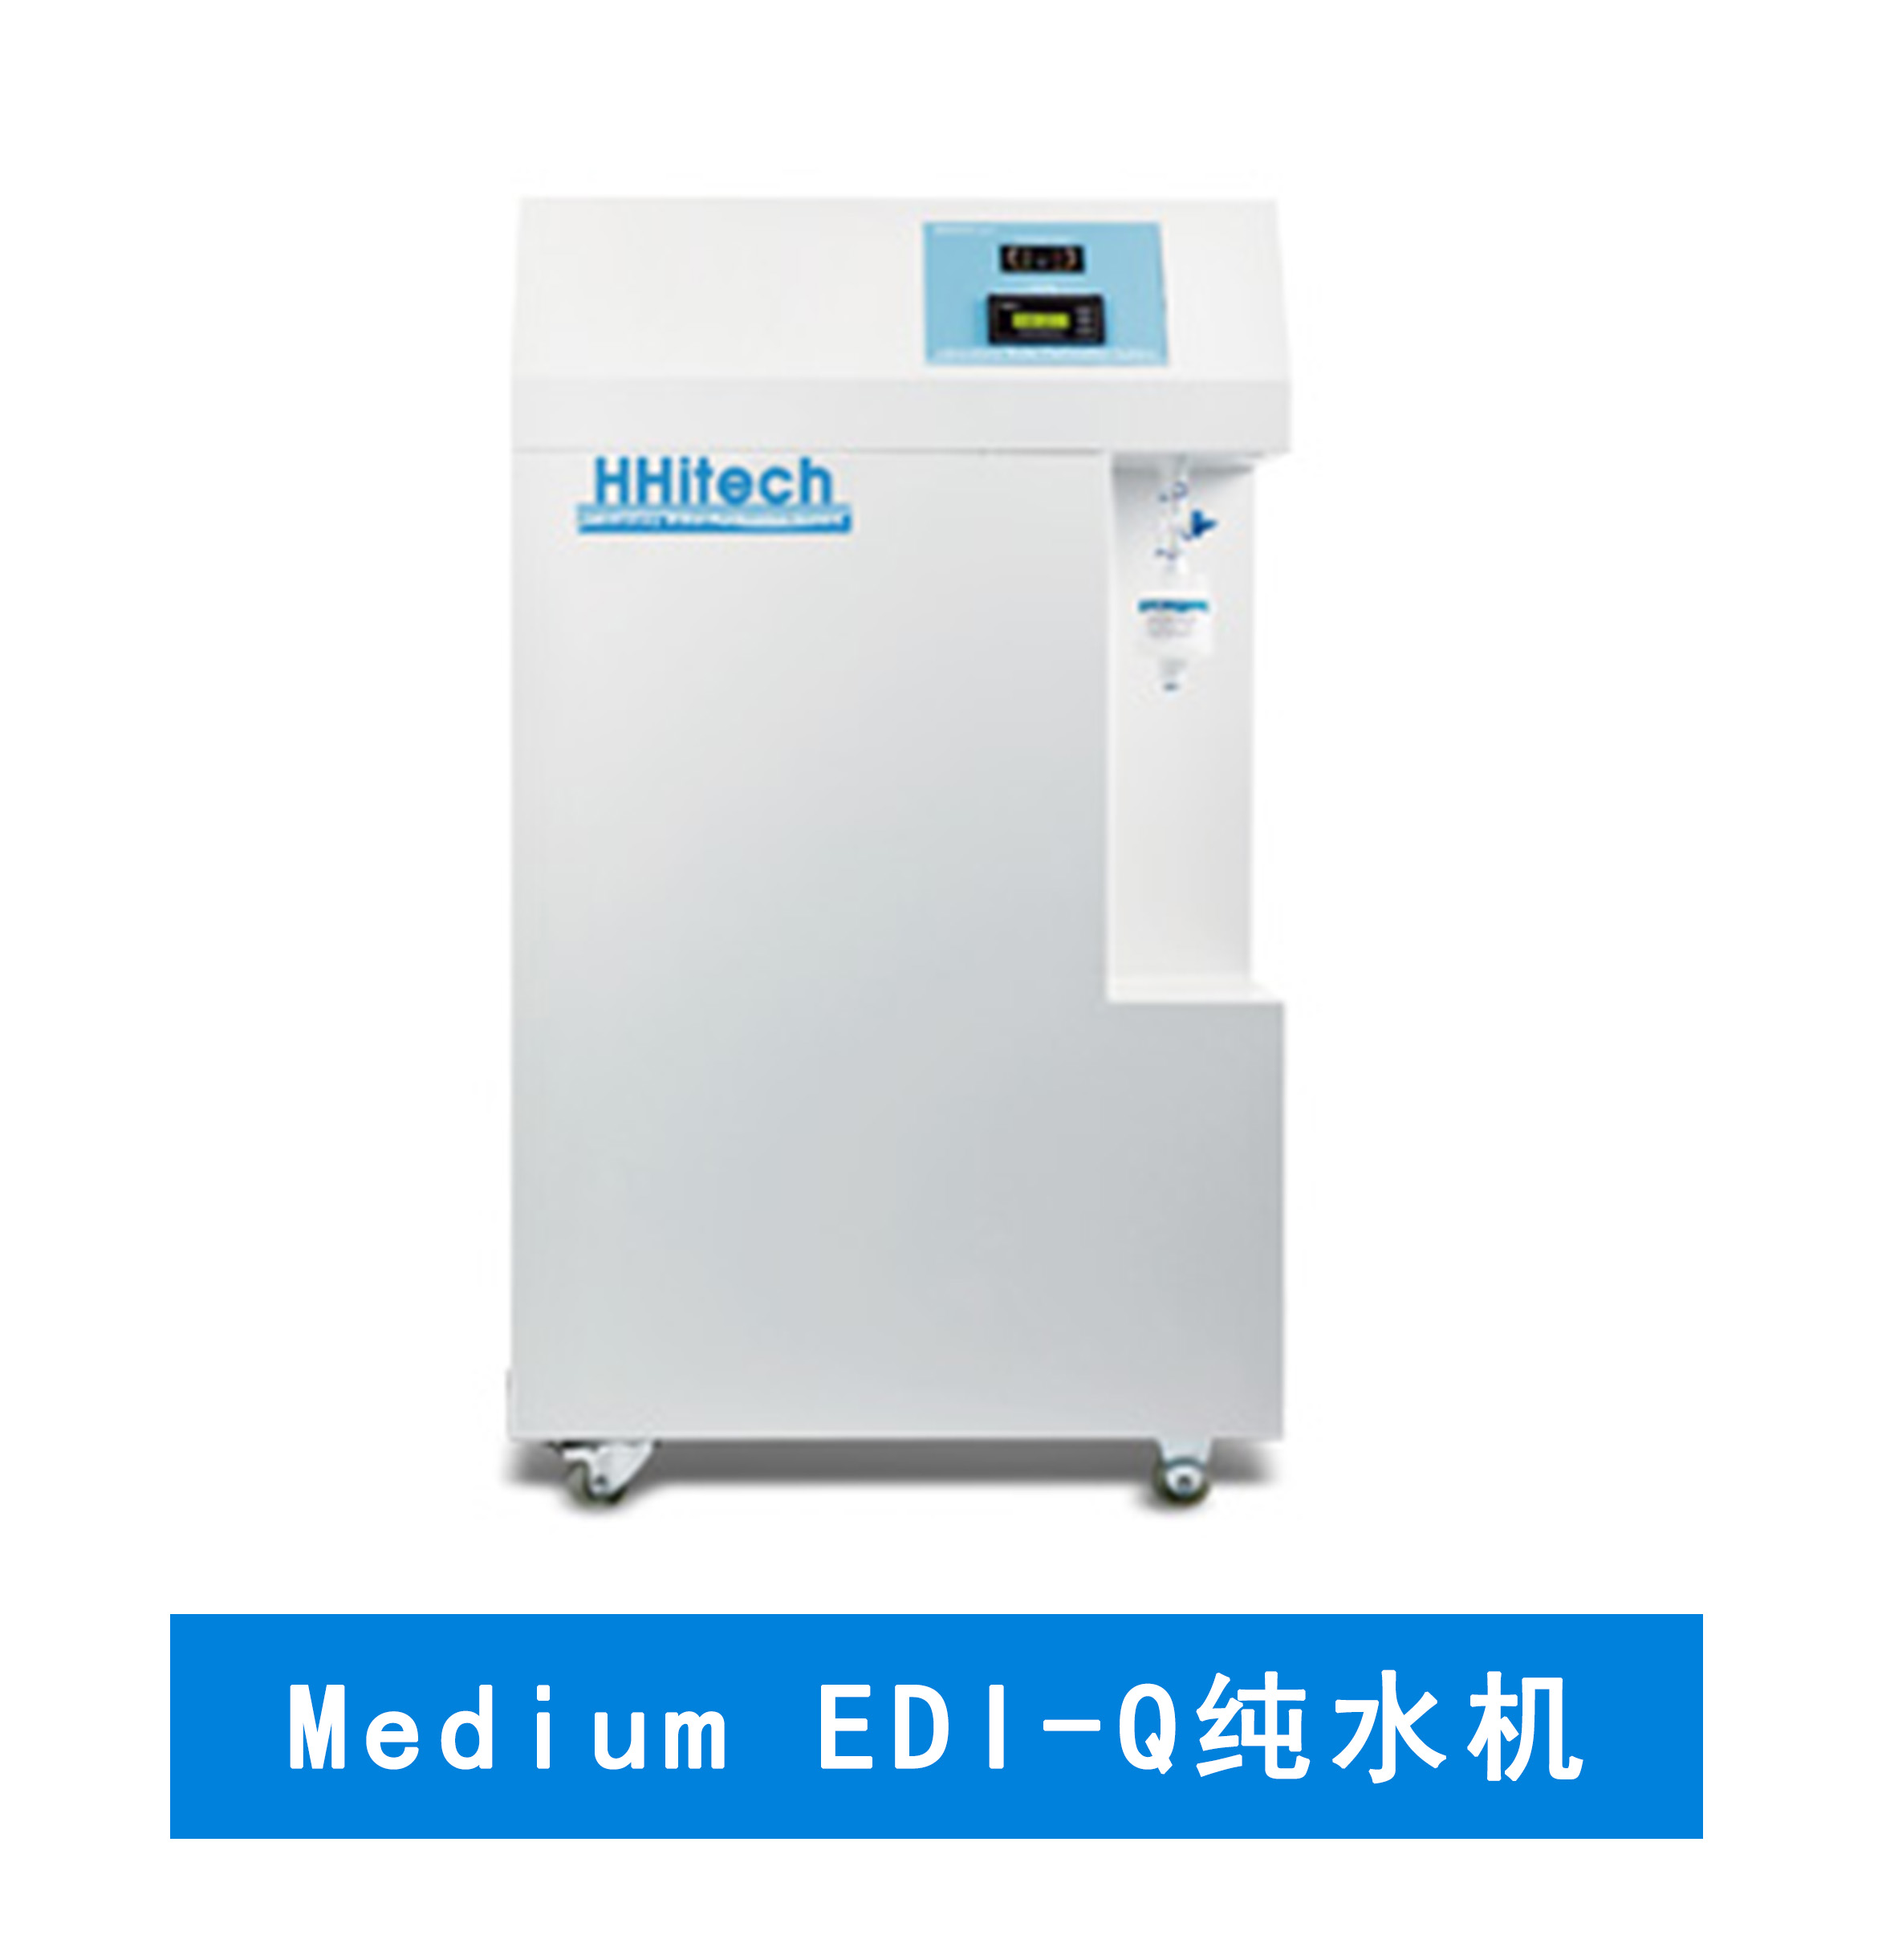 上海和泰 Medium EDI-Q纯水机 实验室纯水系统